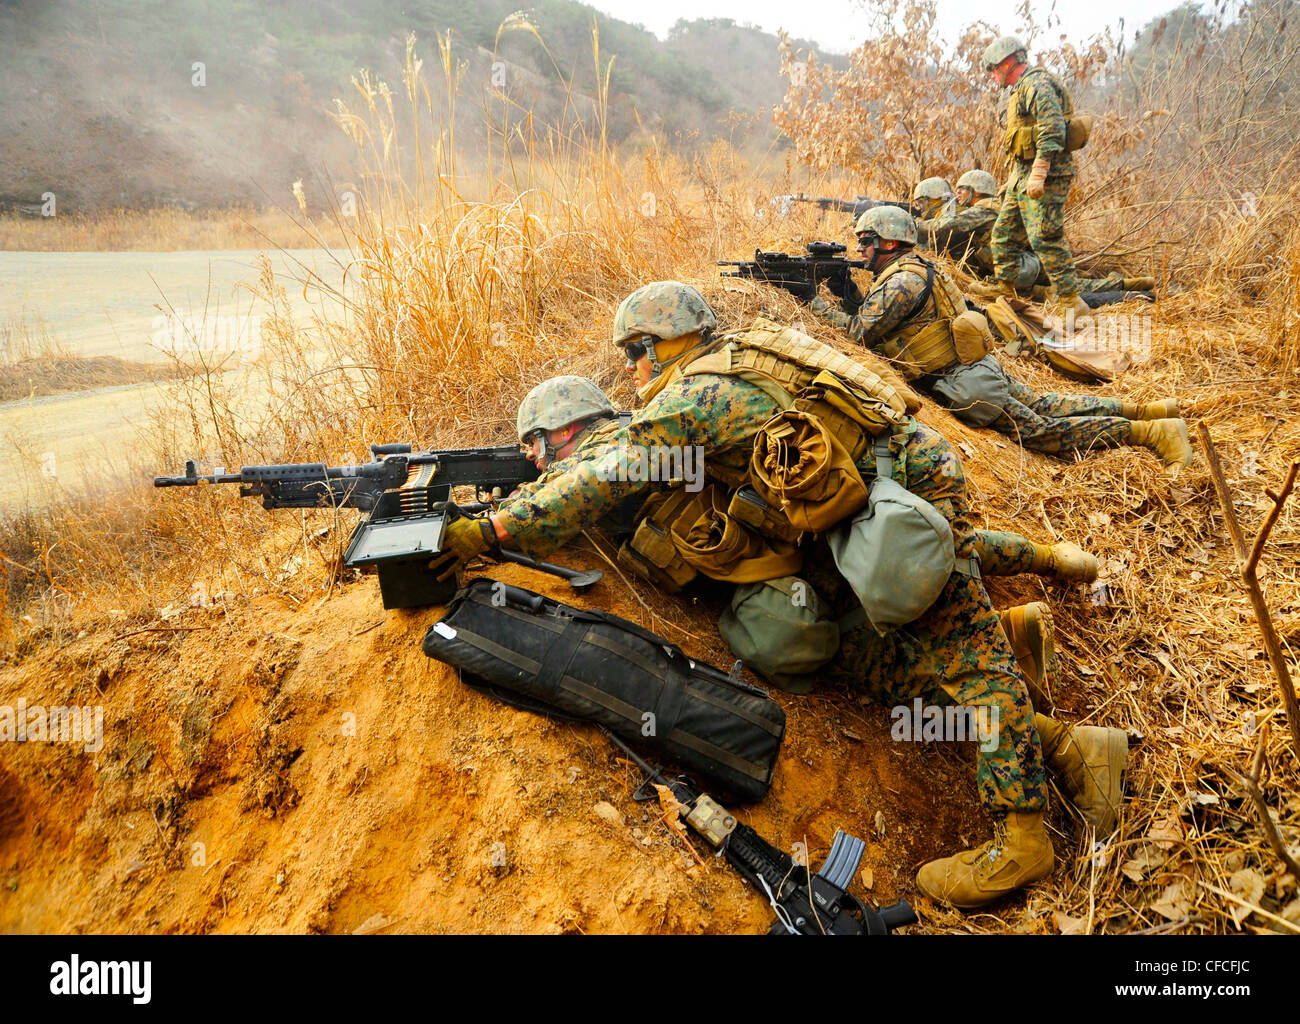 CAMP RODRIGUEZ, Republik Korea (4. März 2012) Marines, die dem 2. Platoon, Company Pacific, Fleet Anti-Terrorism Security Team (FAST) zugeordnet sind, führen eine Live-Feuerübung mit M-16 A4 Gewehren, M4 Sturmgewehren, M240 mittleren Maschinengewehren und dem M39 verbesserten Kampfgewehr durch. Mehr als 50 Marines, die dem 2. Platoon zugewiesen sind, trainieren im Camp Rodriguez Live Fire Complex im Rahmen DER SCHNELLÜBUNG 2012, um die Waffenkunst vom 27. Februar bis 8. März weiter zu erhalten und zu verbessern. Stockfoto